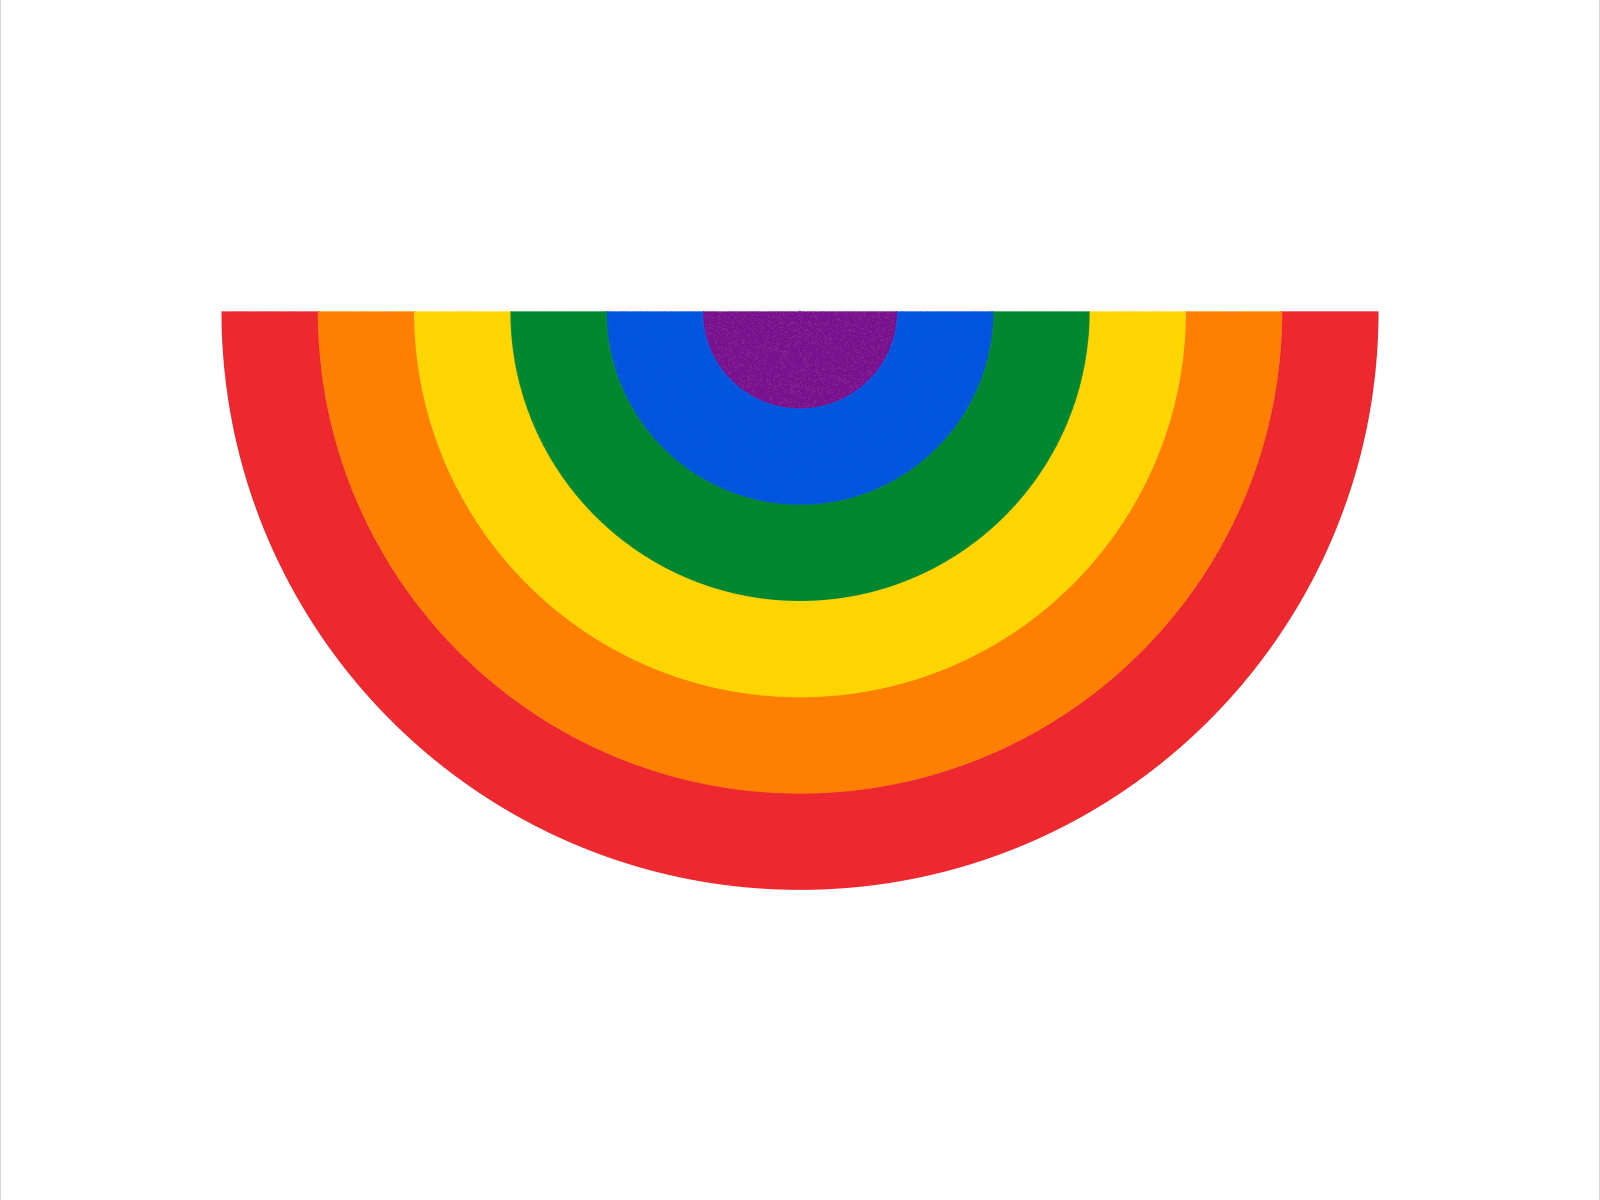 "Happy" Pride colorful happy lgbtq pride rainbow smile